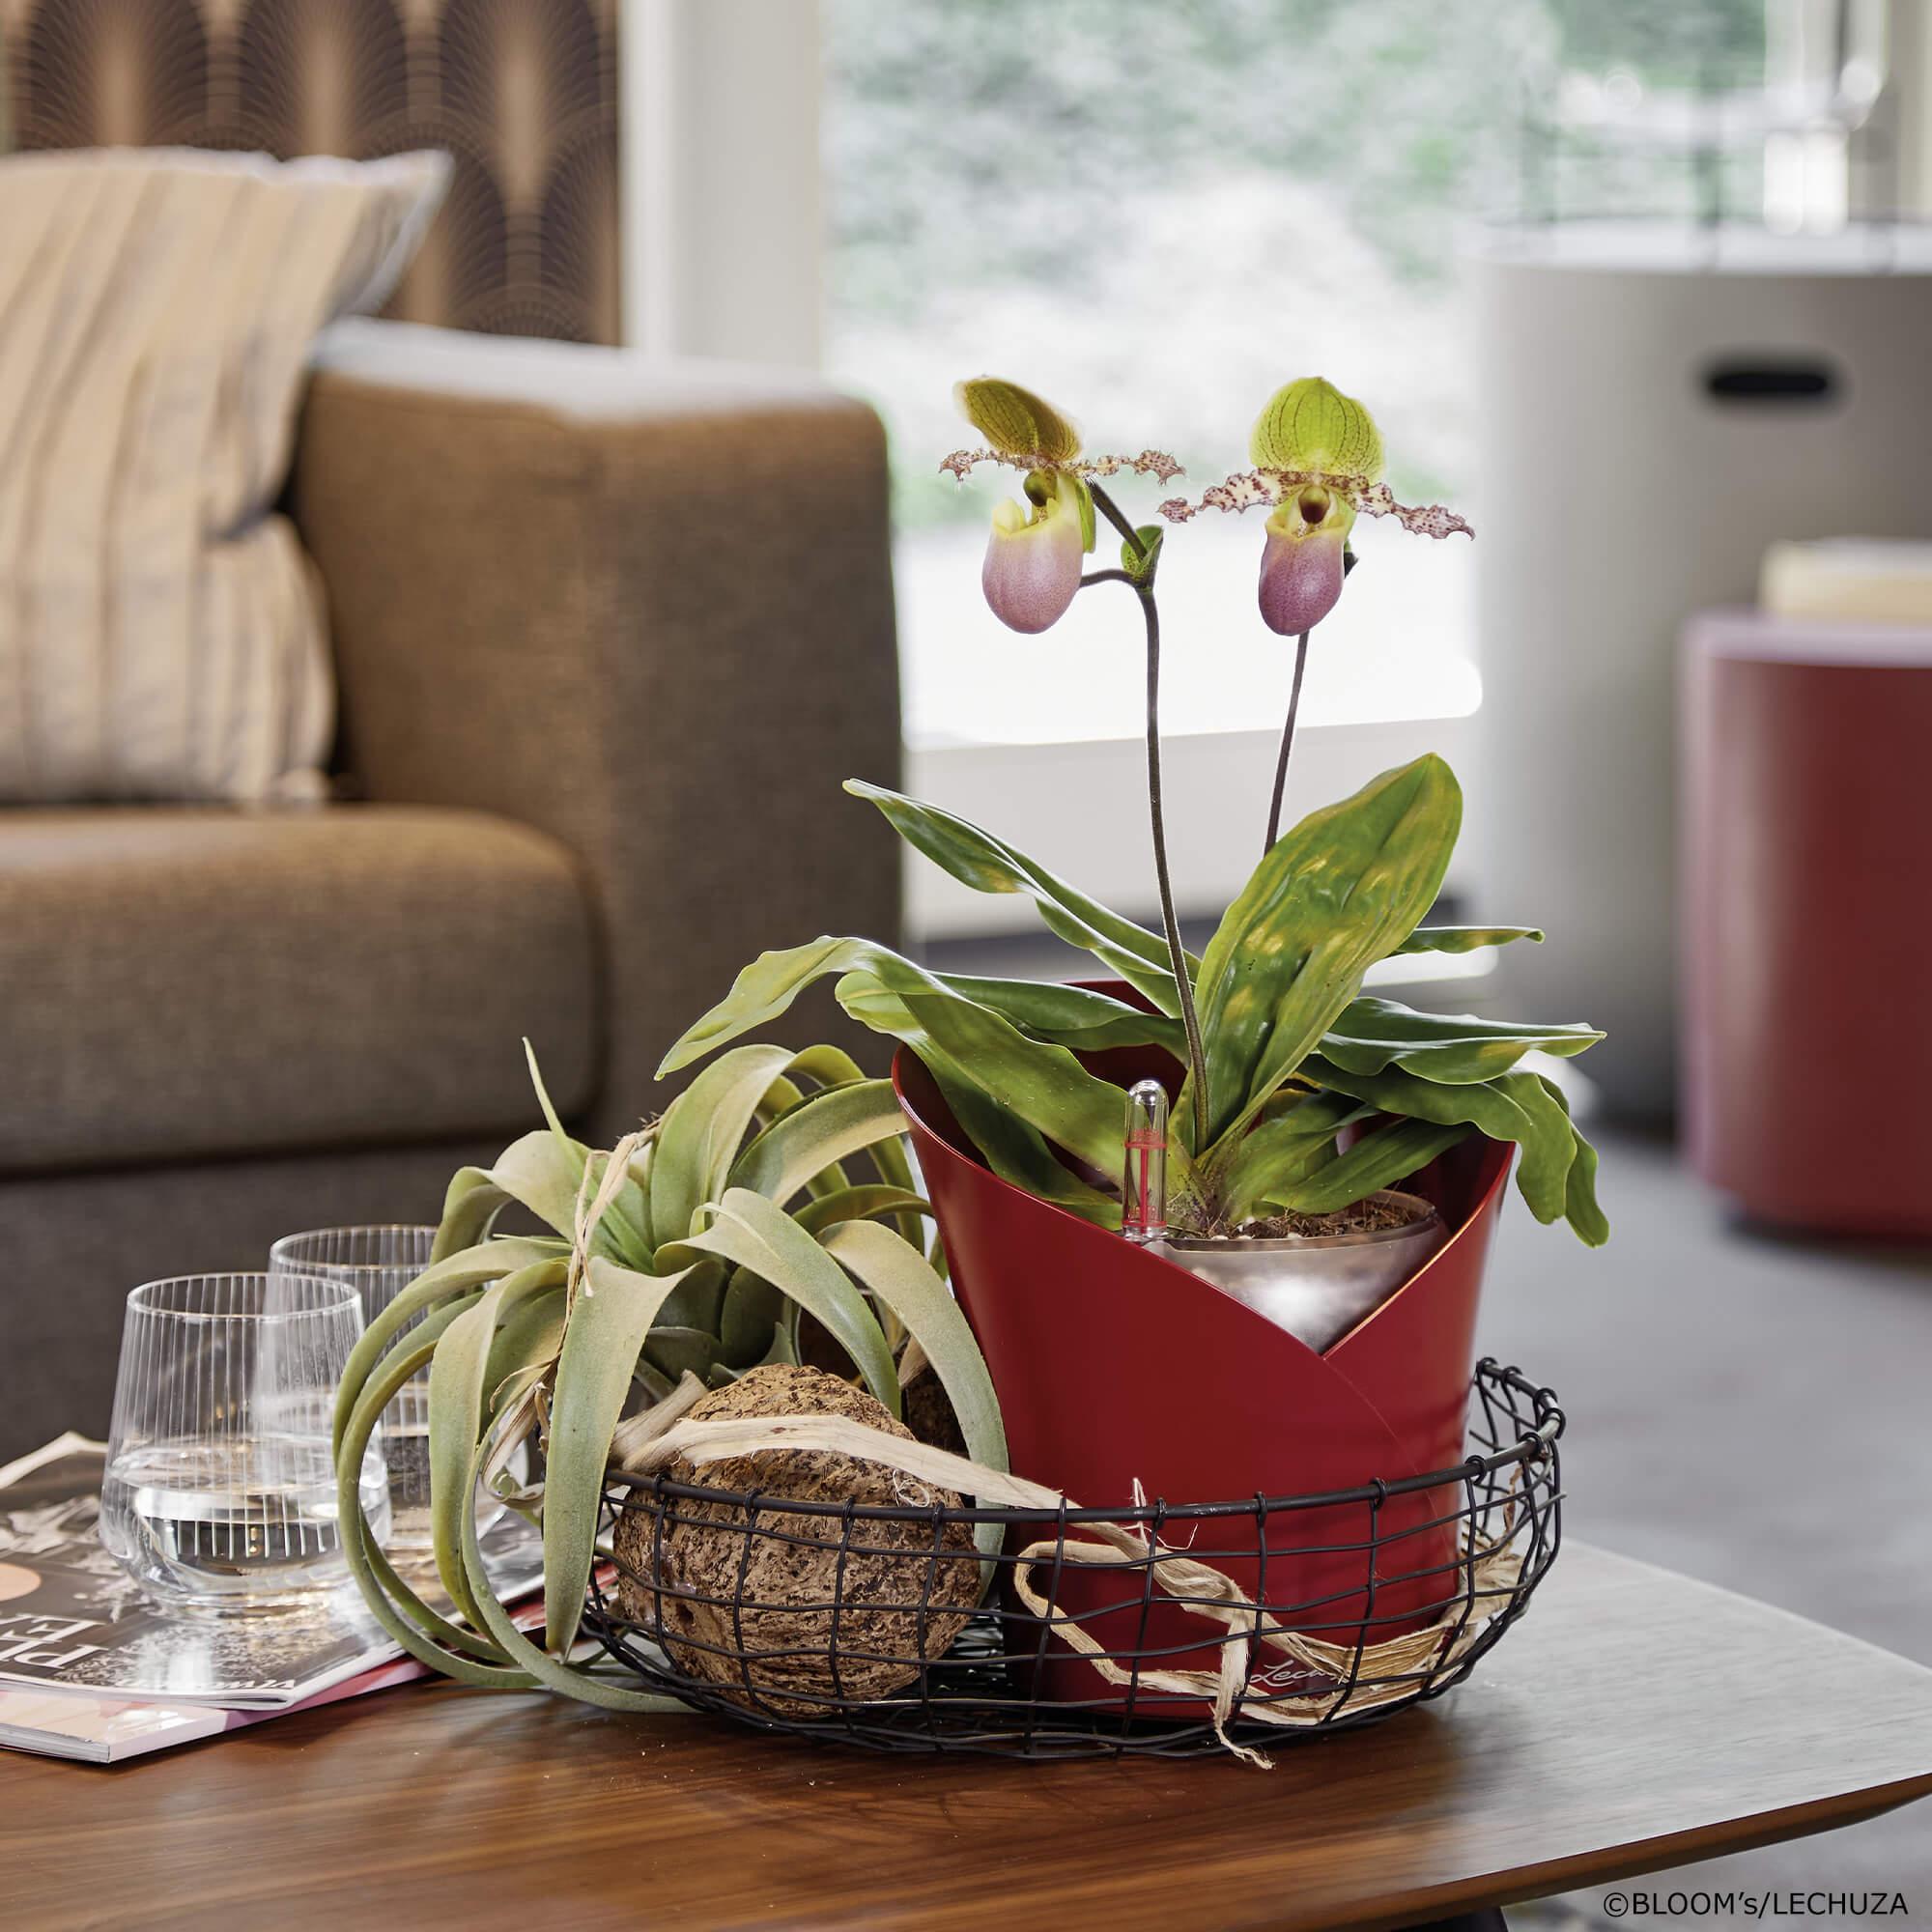 LECHUZA ORCHIDEA rosso scarlatto 18x18x20 cm, vaso per orchidee